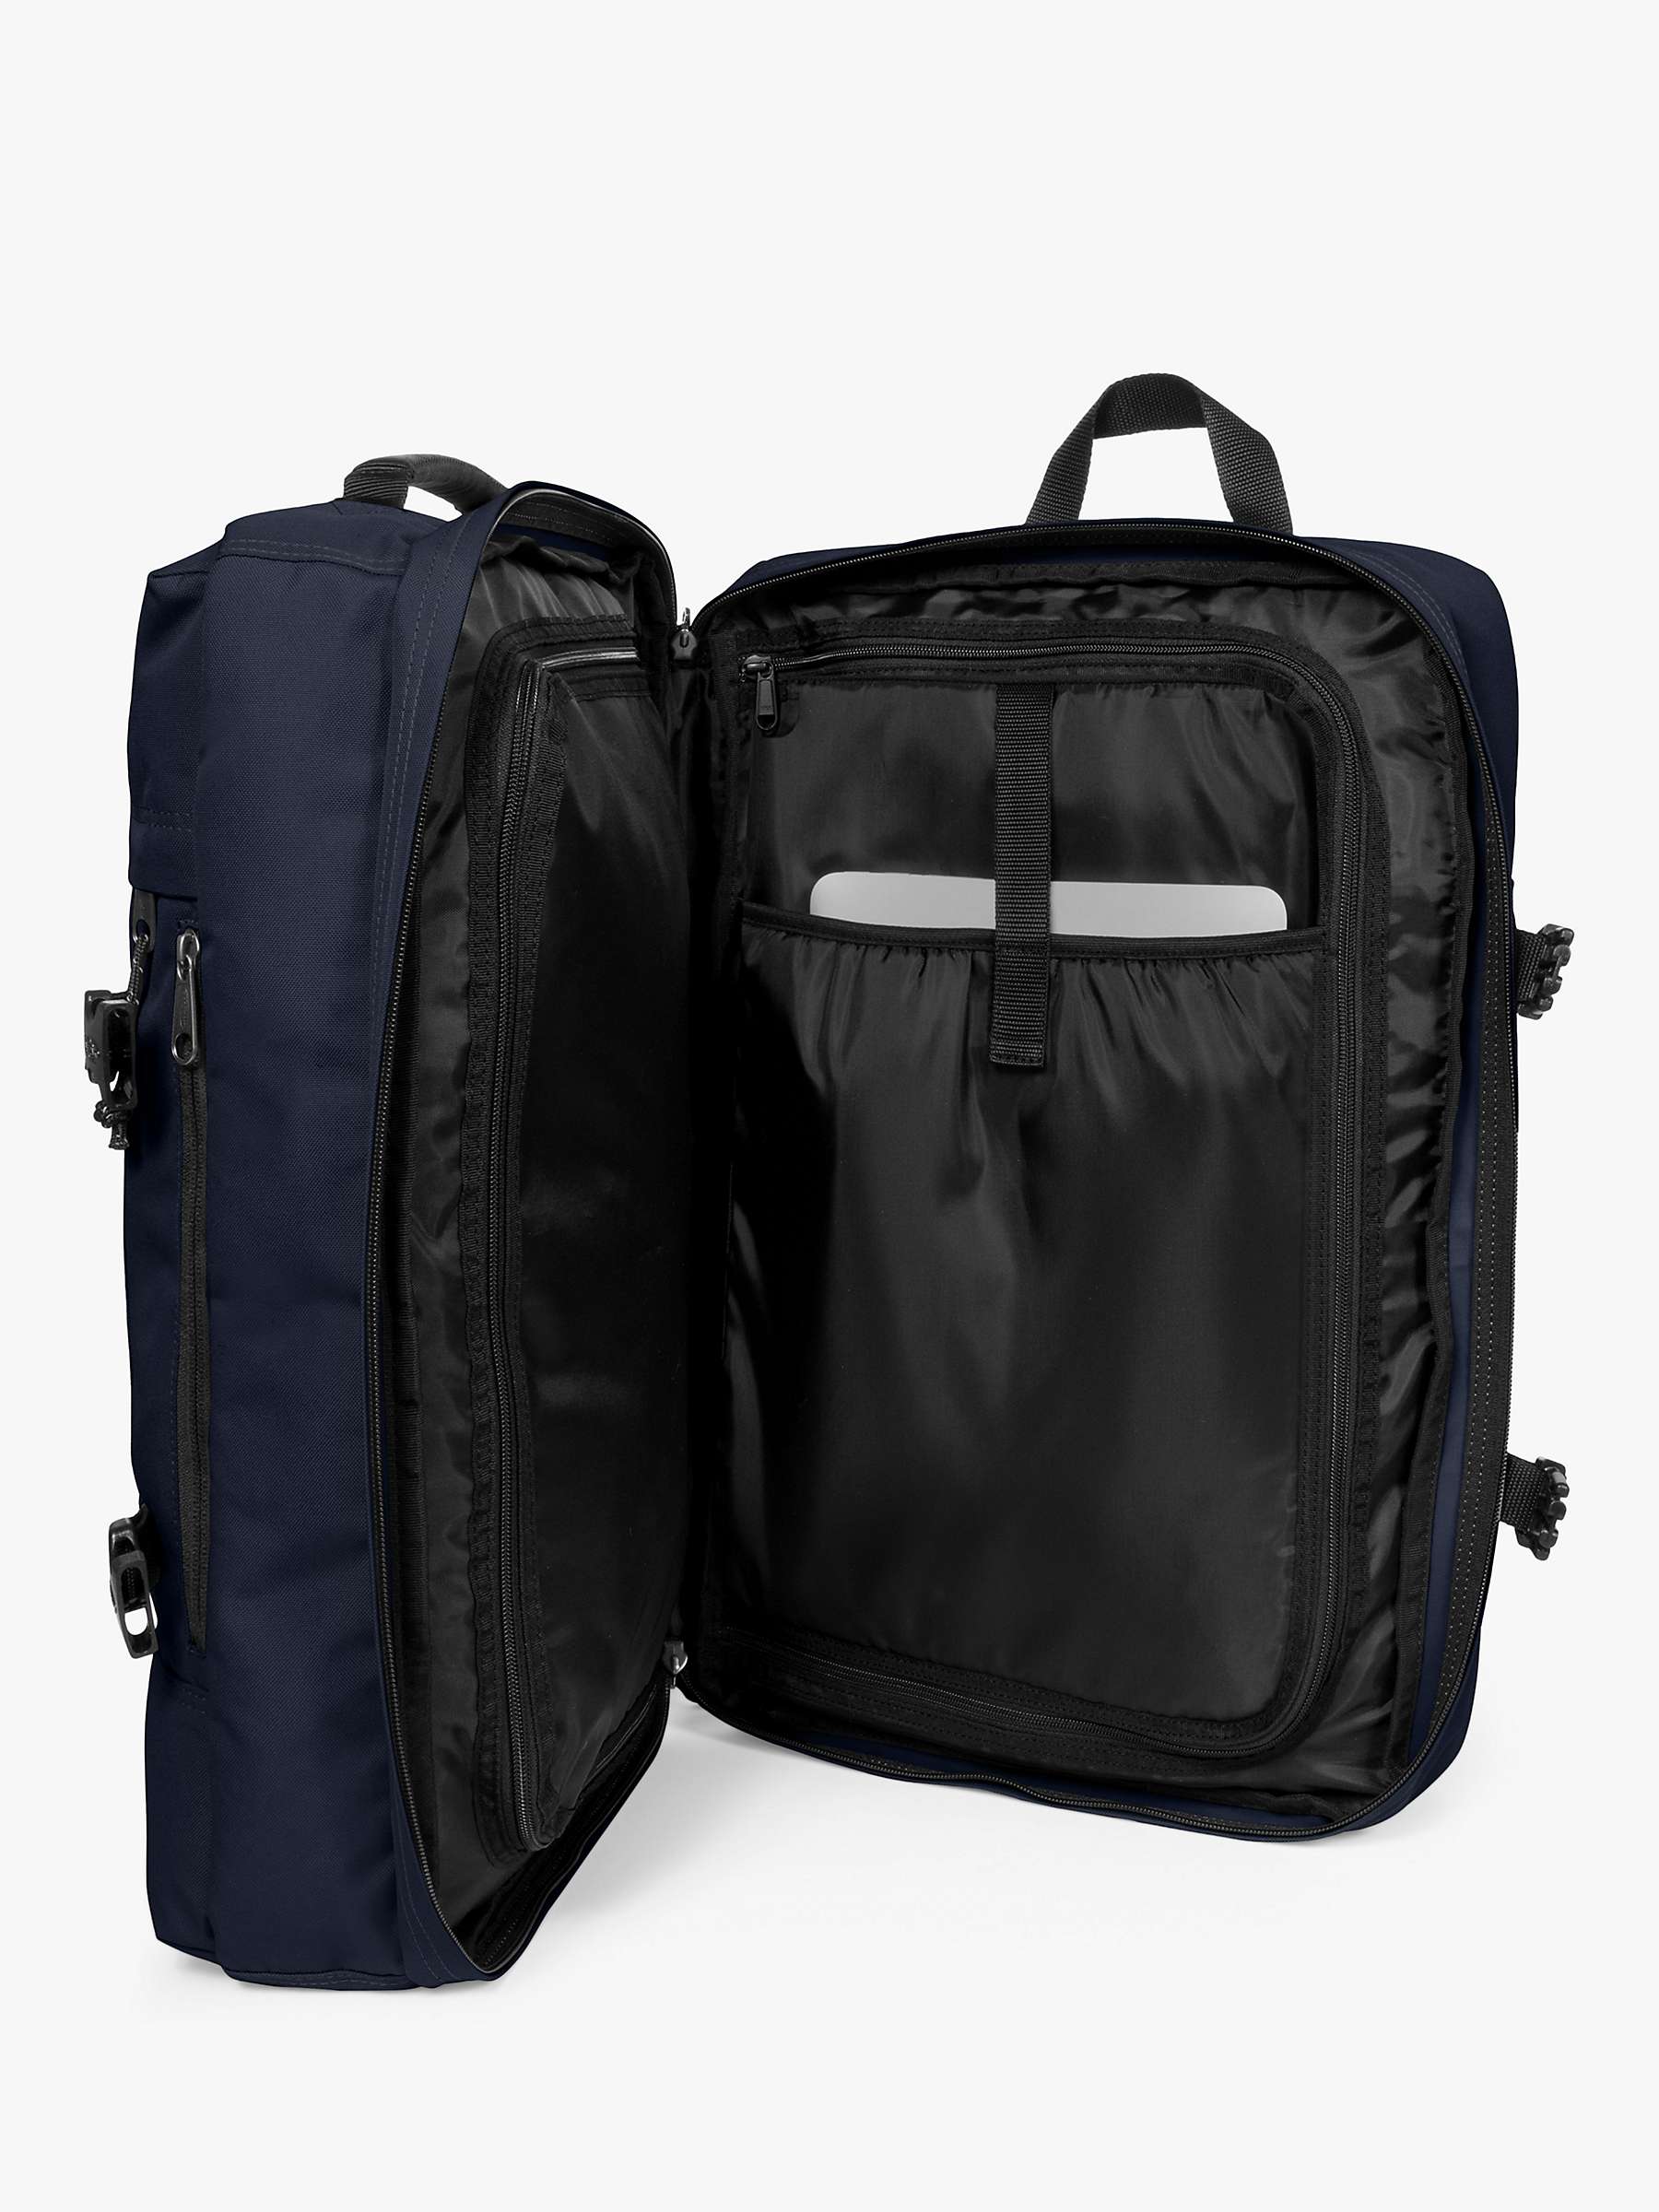 Buy Eastpak Tranzpack Backpack Online at johnlewis.com